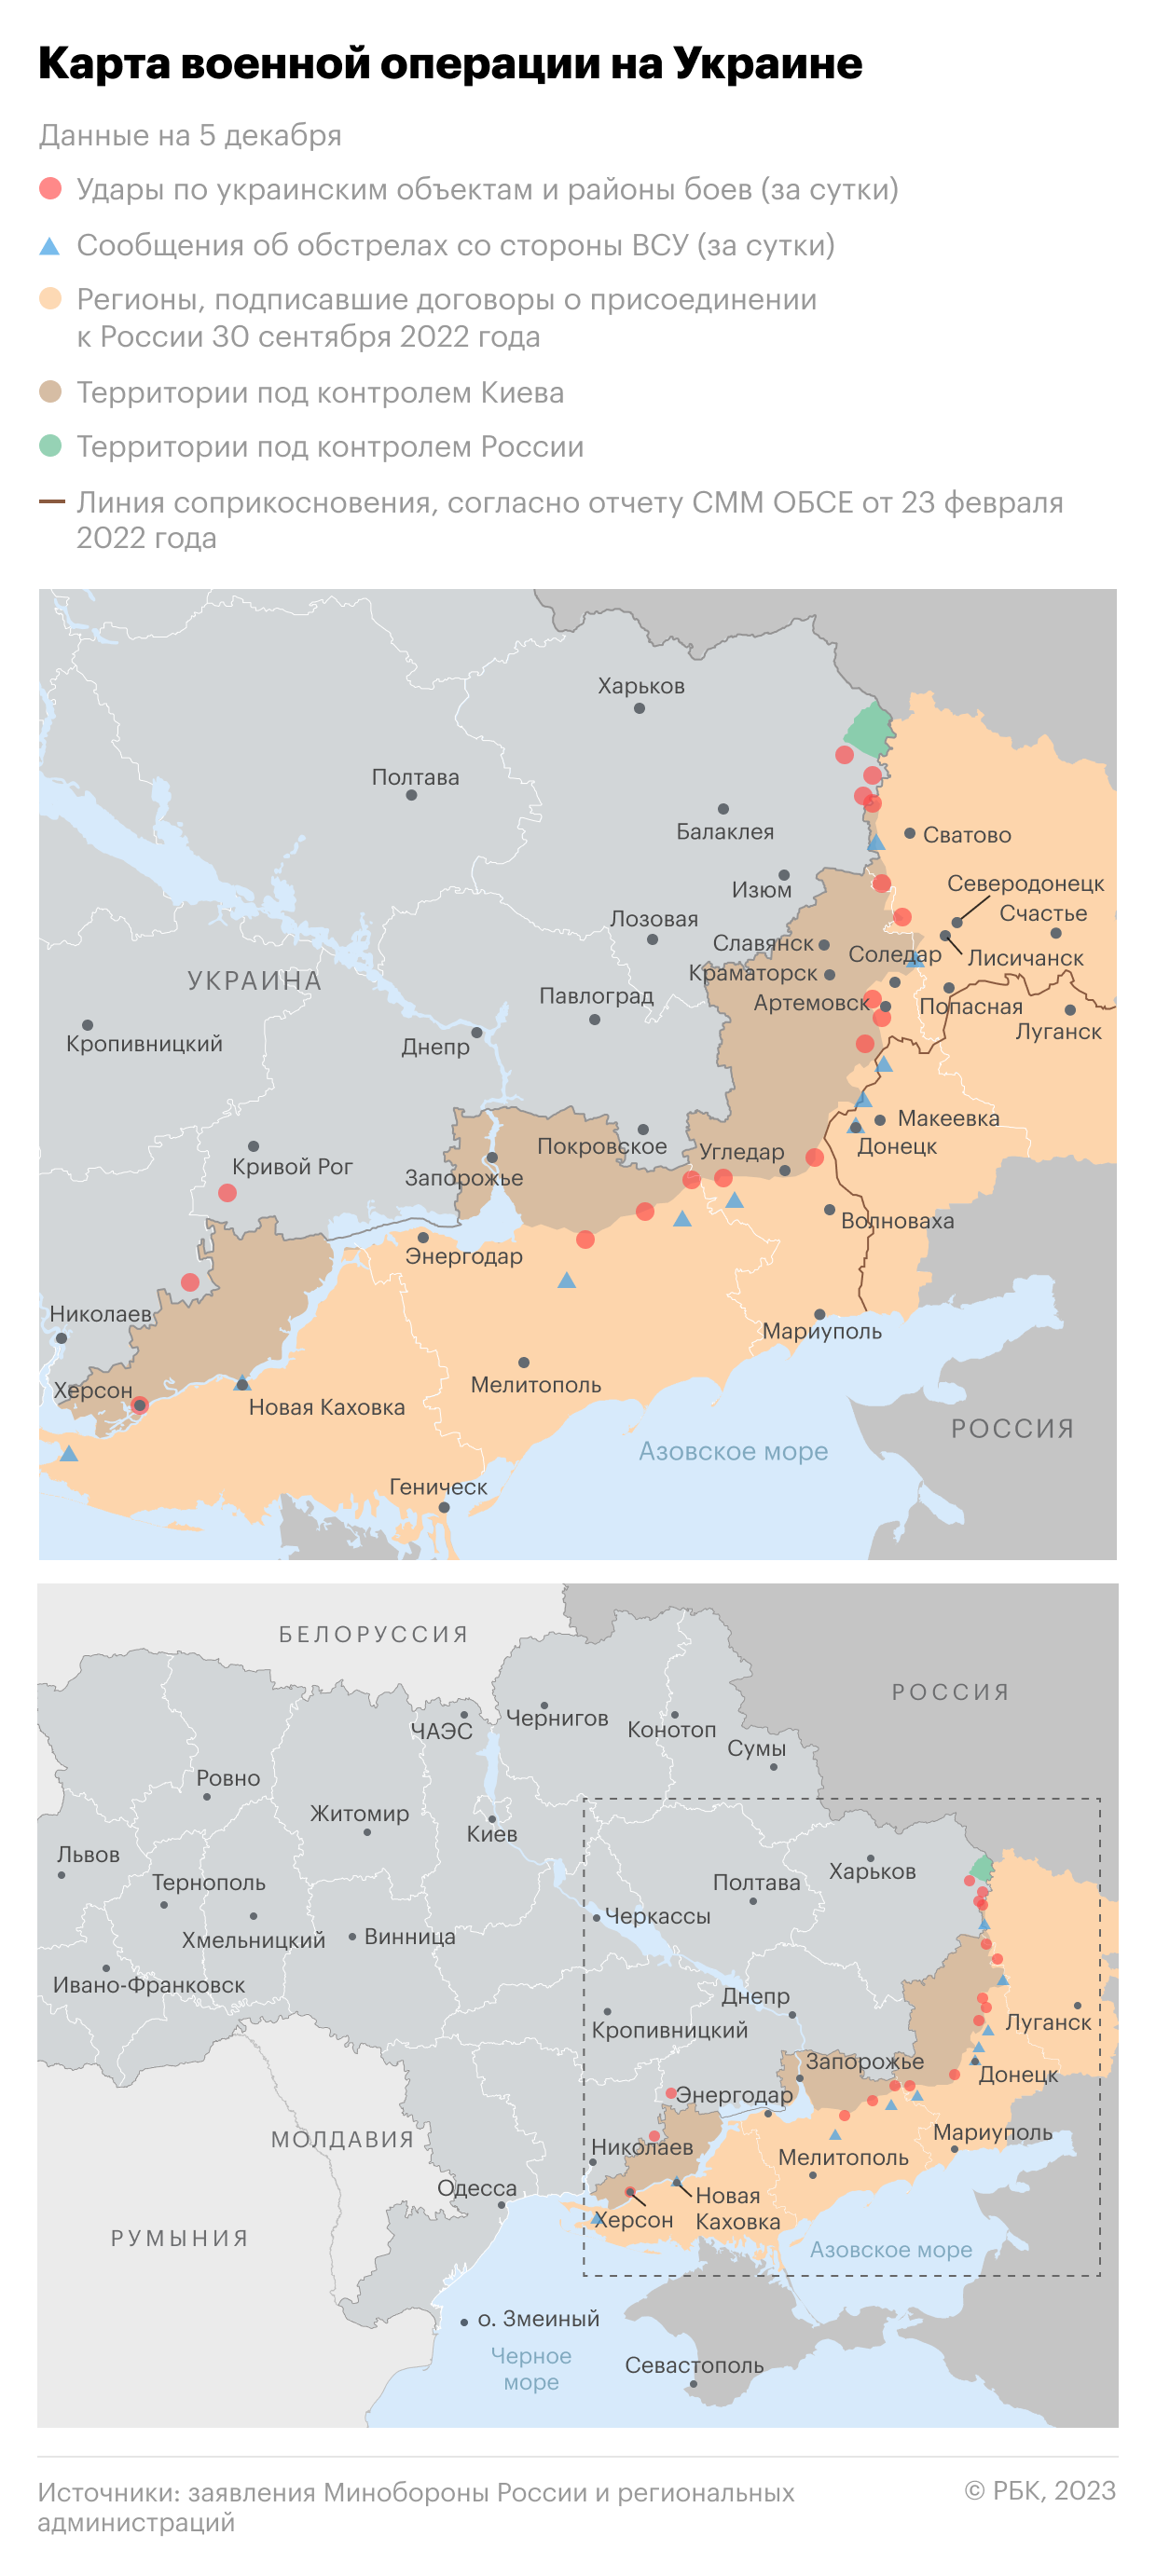 Военная операция на Украине. Карта на 5 декабря